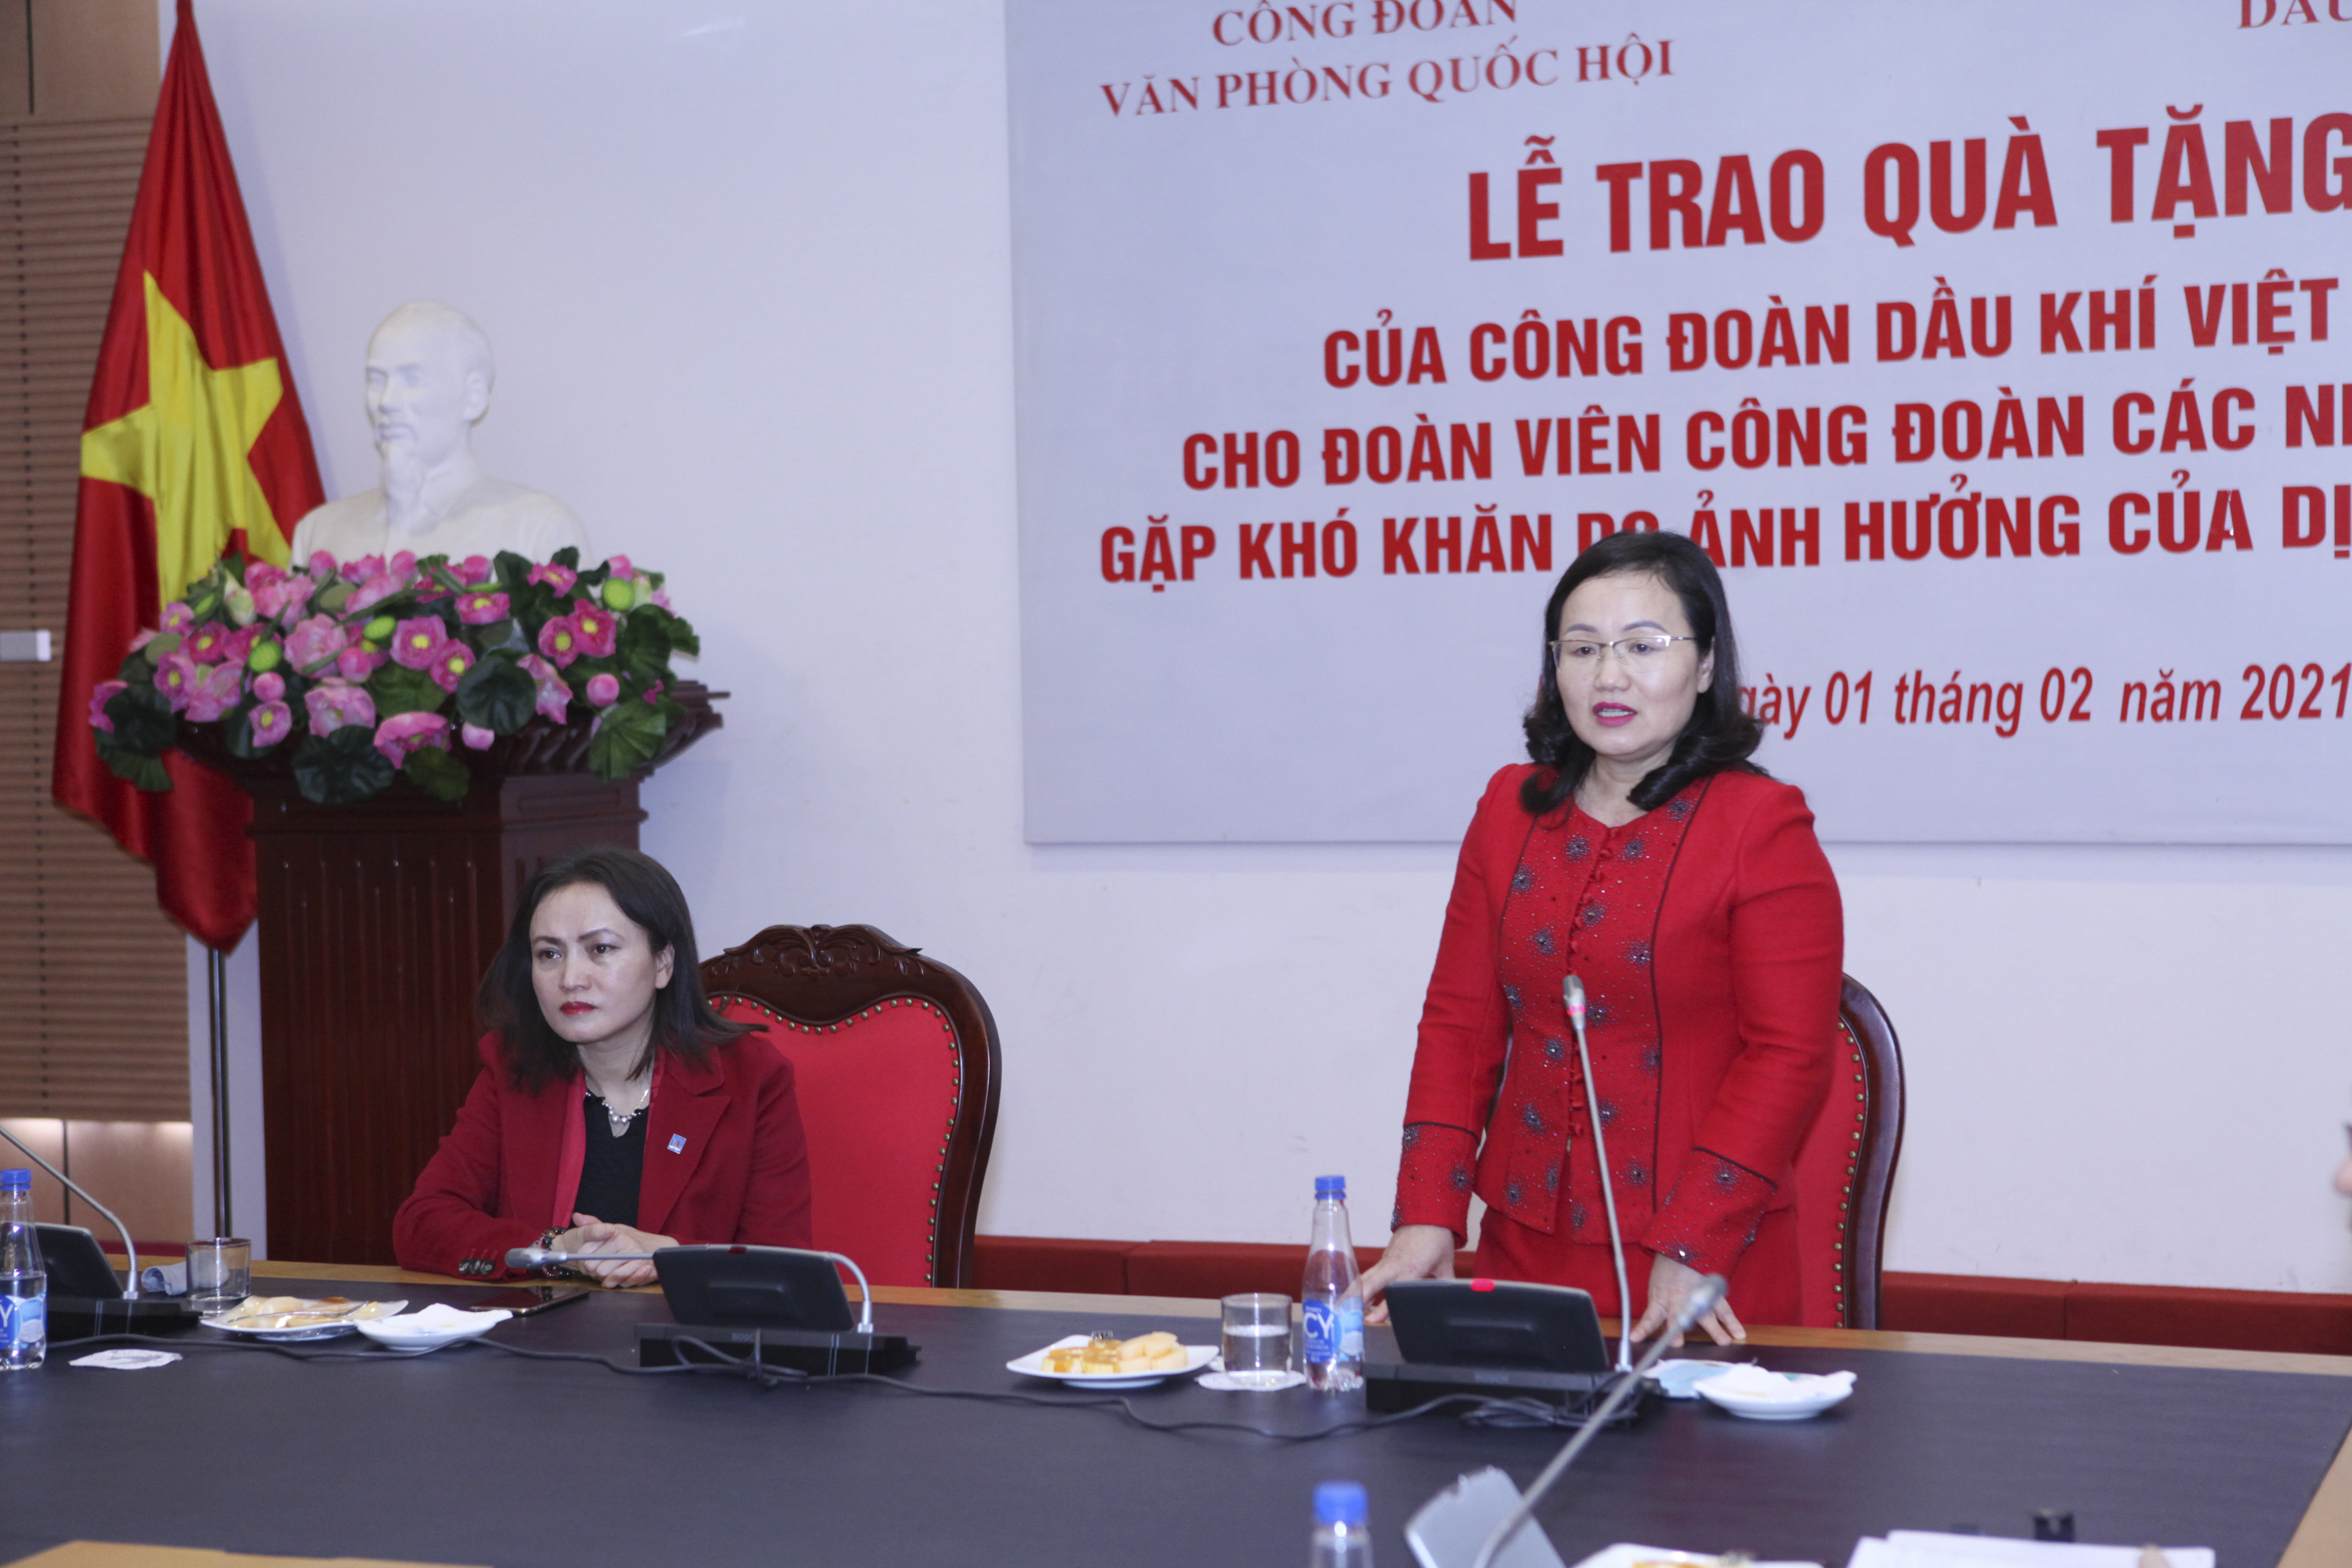 	Phó Chủ nhiệm Văn phòng Quốc hội, Chủ tịch Công đoàn Văn phòng Quốc hội Phạm Thuý Chinh phát biểu tại buổi Lễ